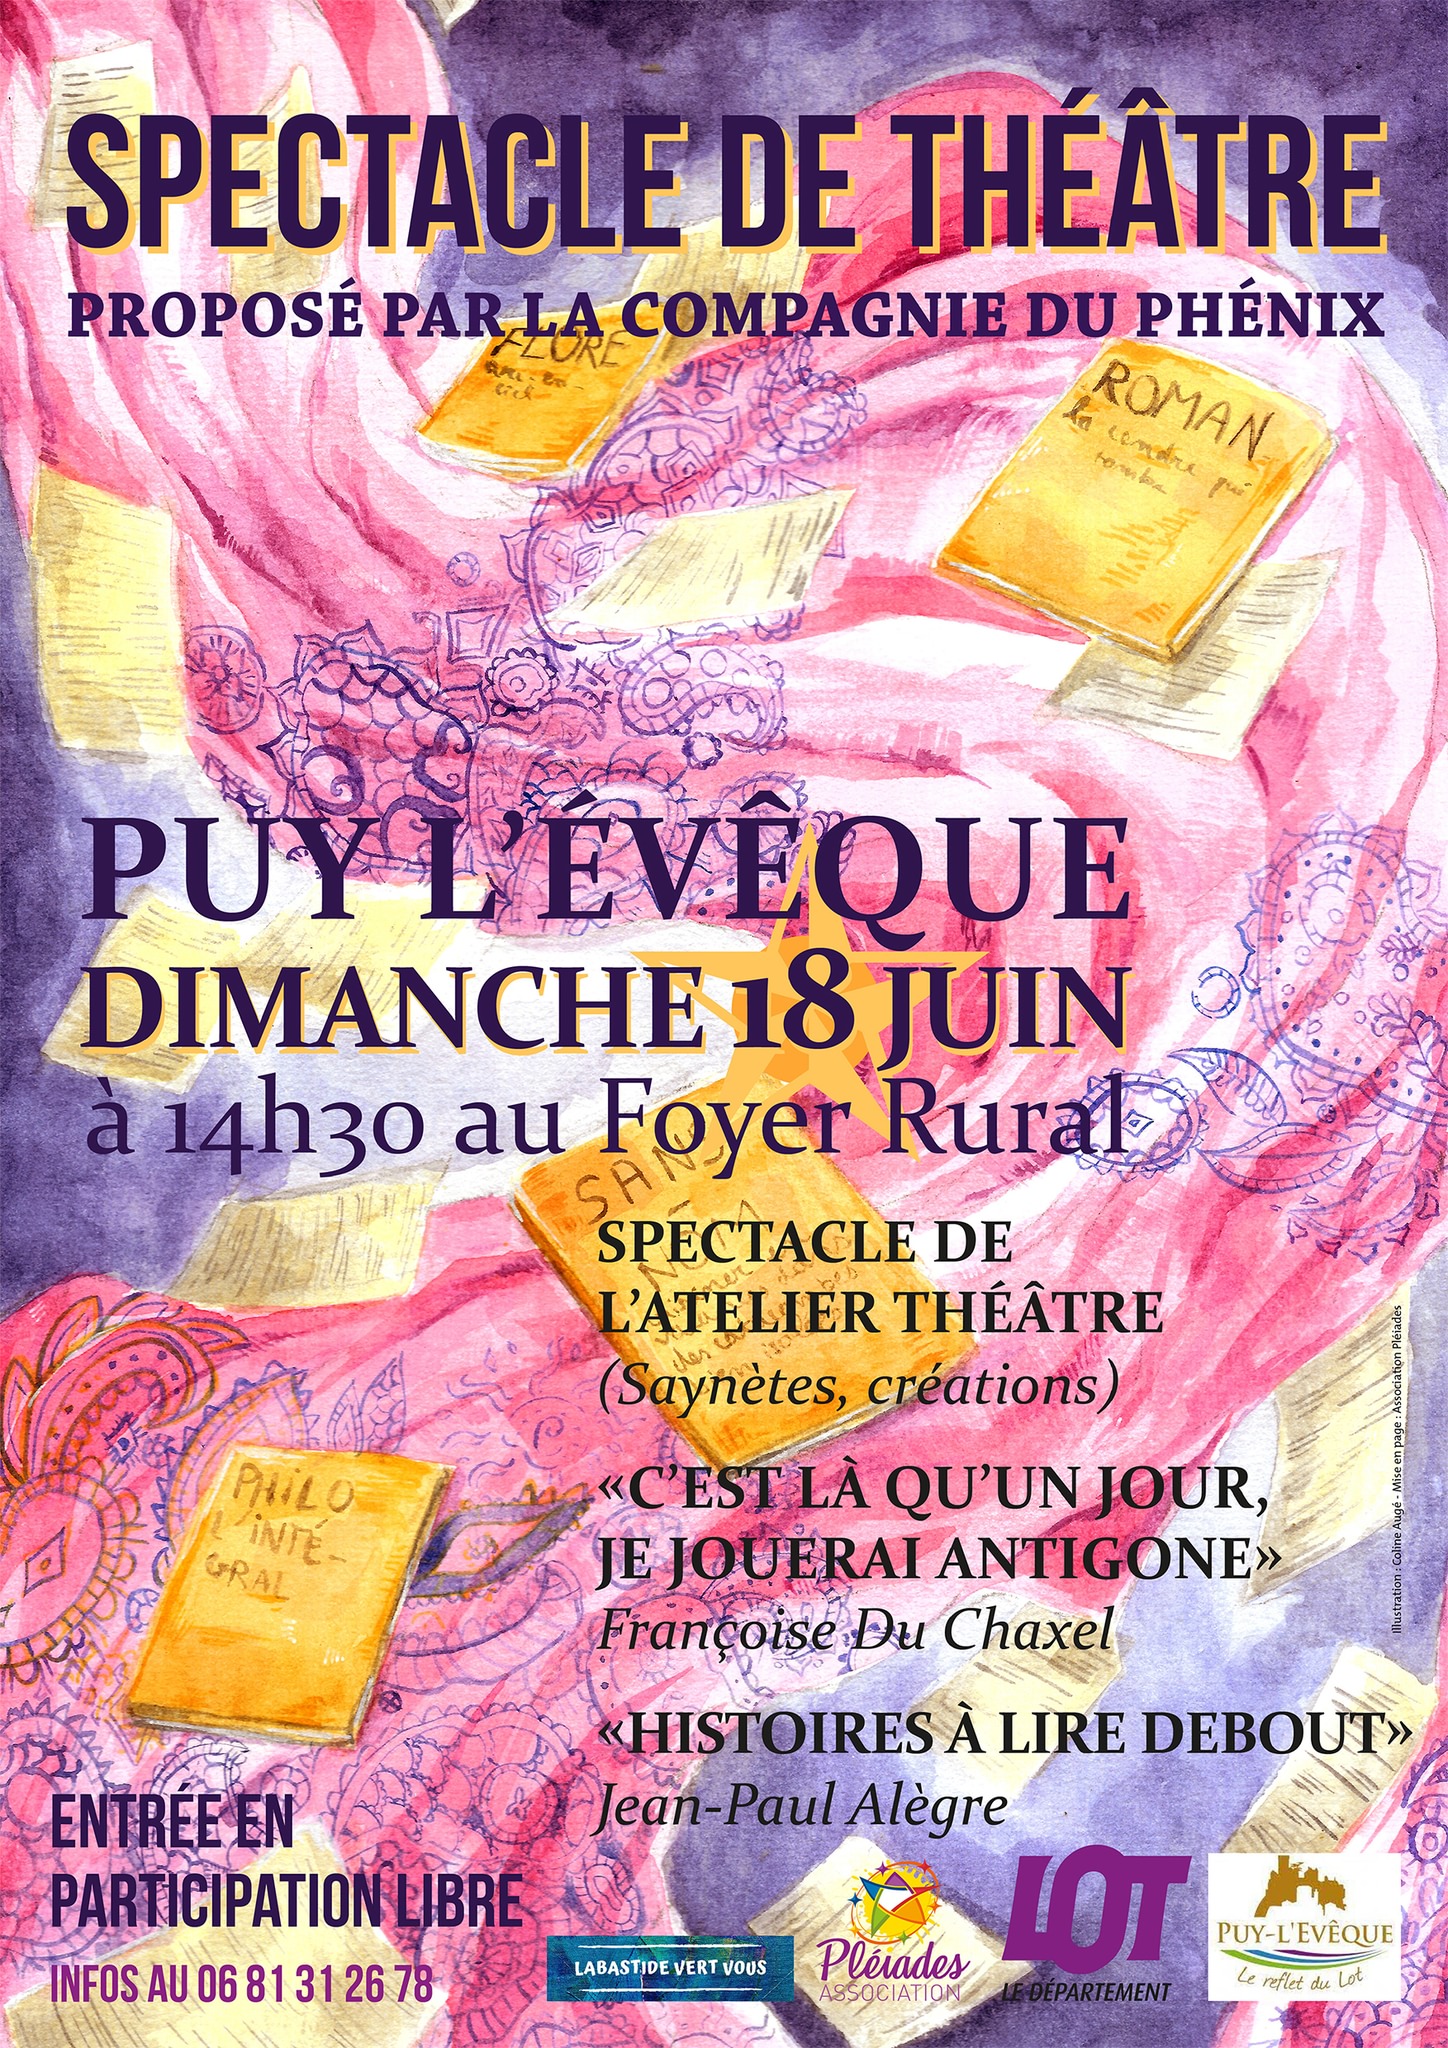 Figeac : Spectacle de Théâtre de la Compagnie du Phénix à Puy-l'Evêque